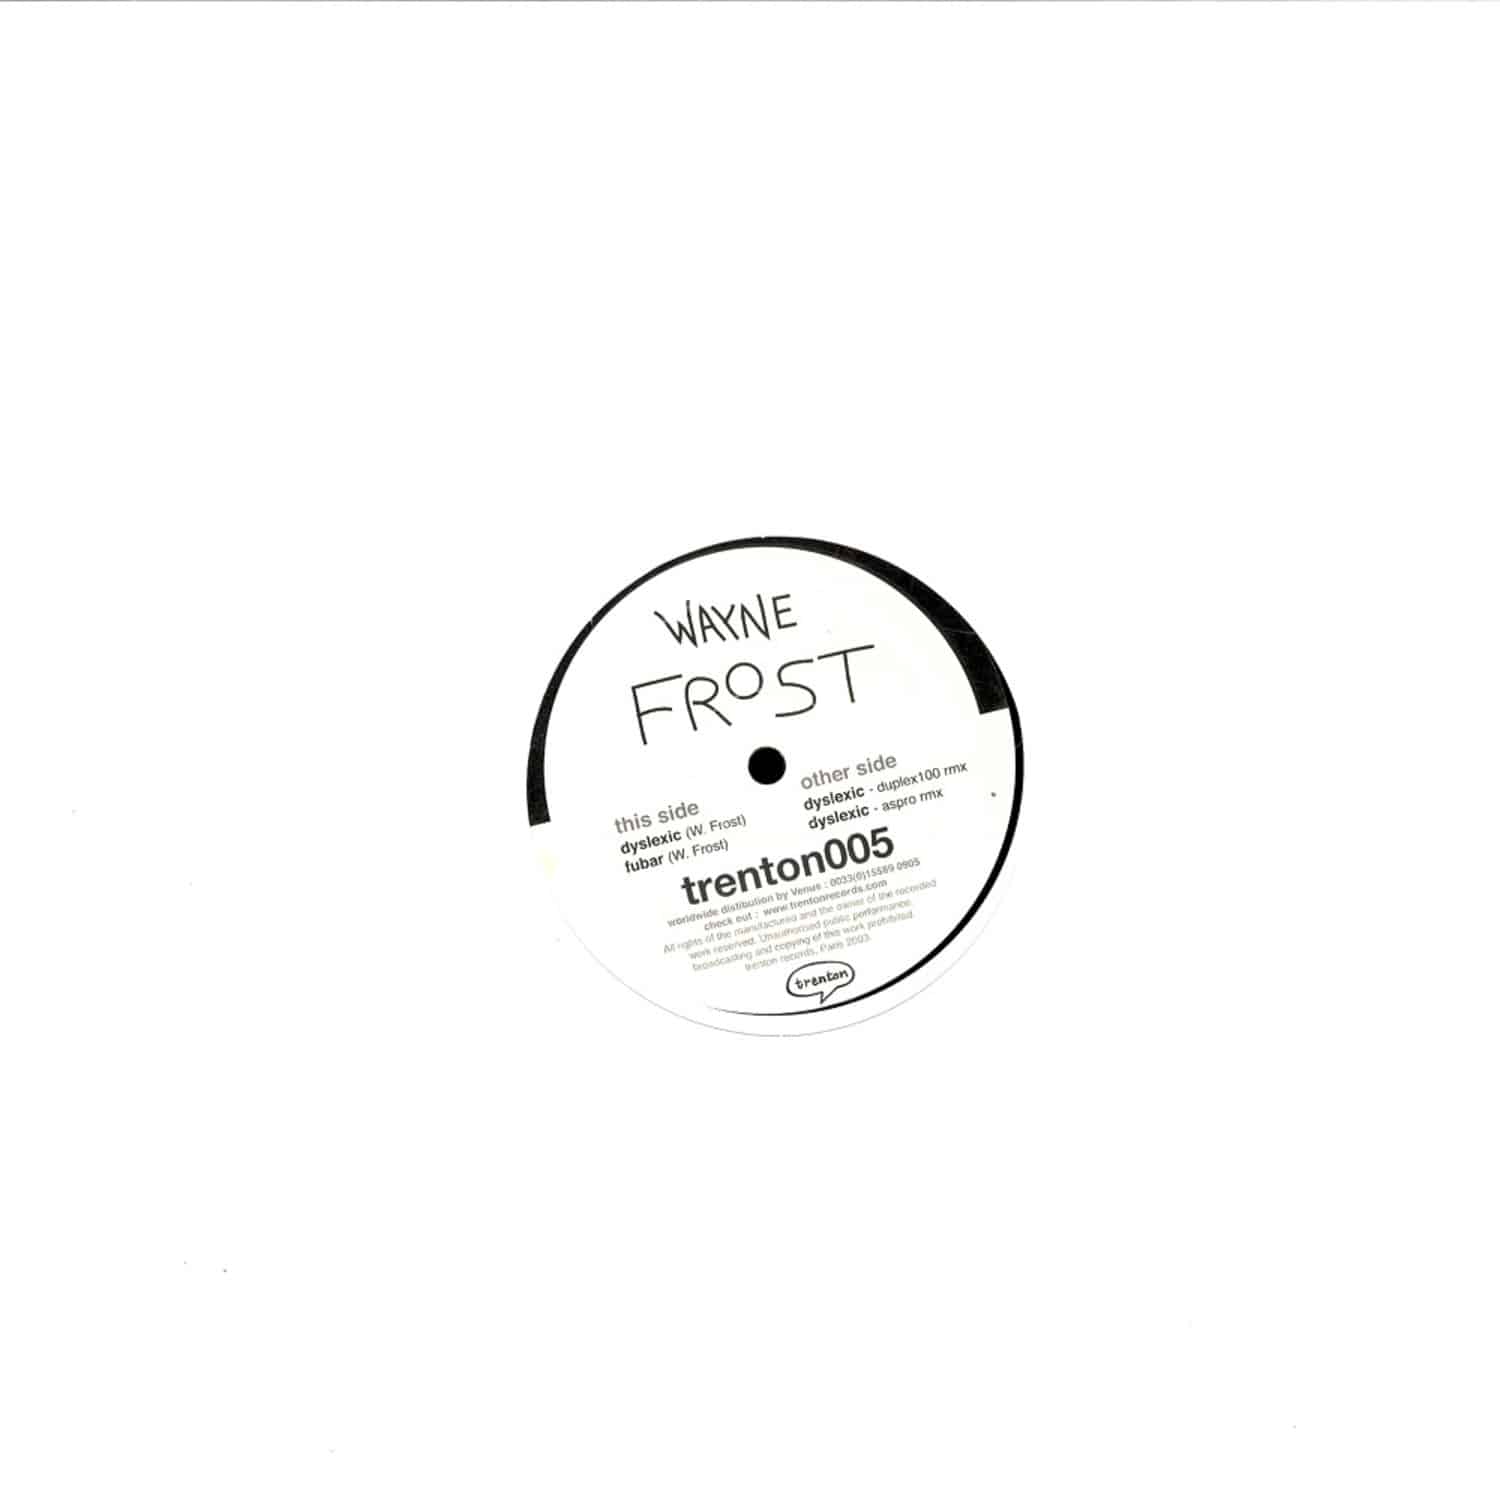 Wayne Frost - DYSLEXIC / DUPLEX 100 RMX